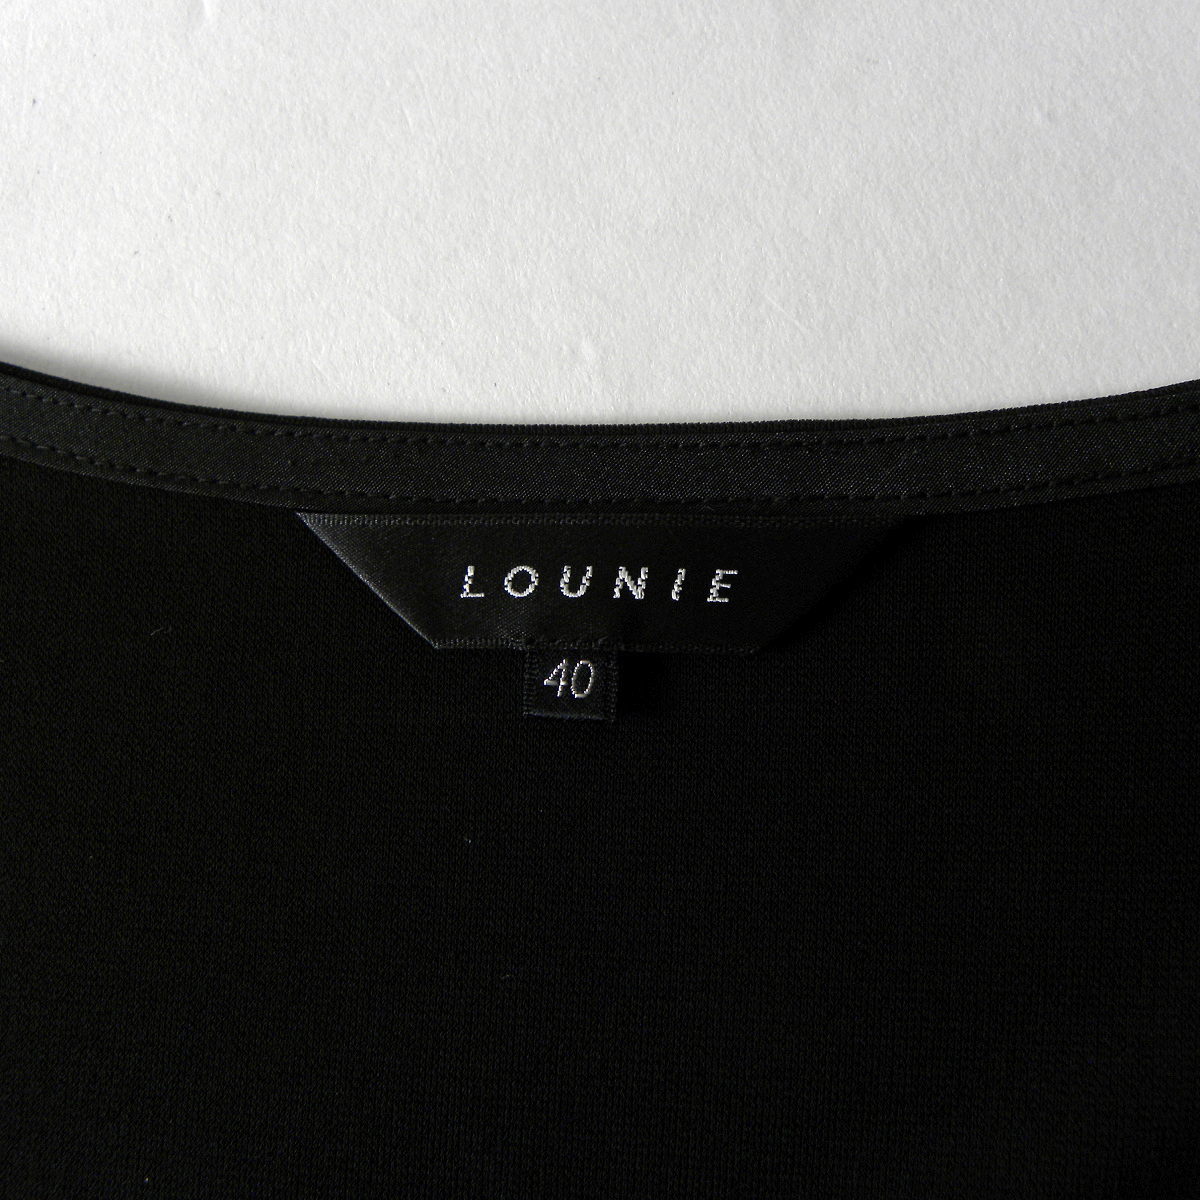  Lounie LOUNIE сверху товар . блестящий . дизайн искусственный шелк поли tia-do оборка безрукавка tops 40 черный сделано в Японии l0511-3